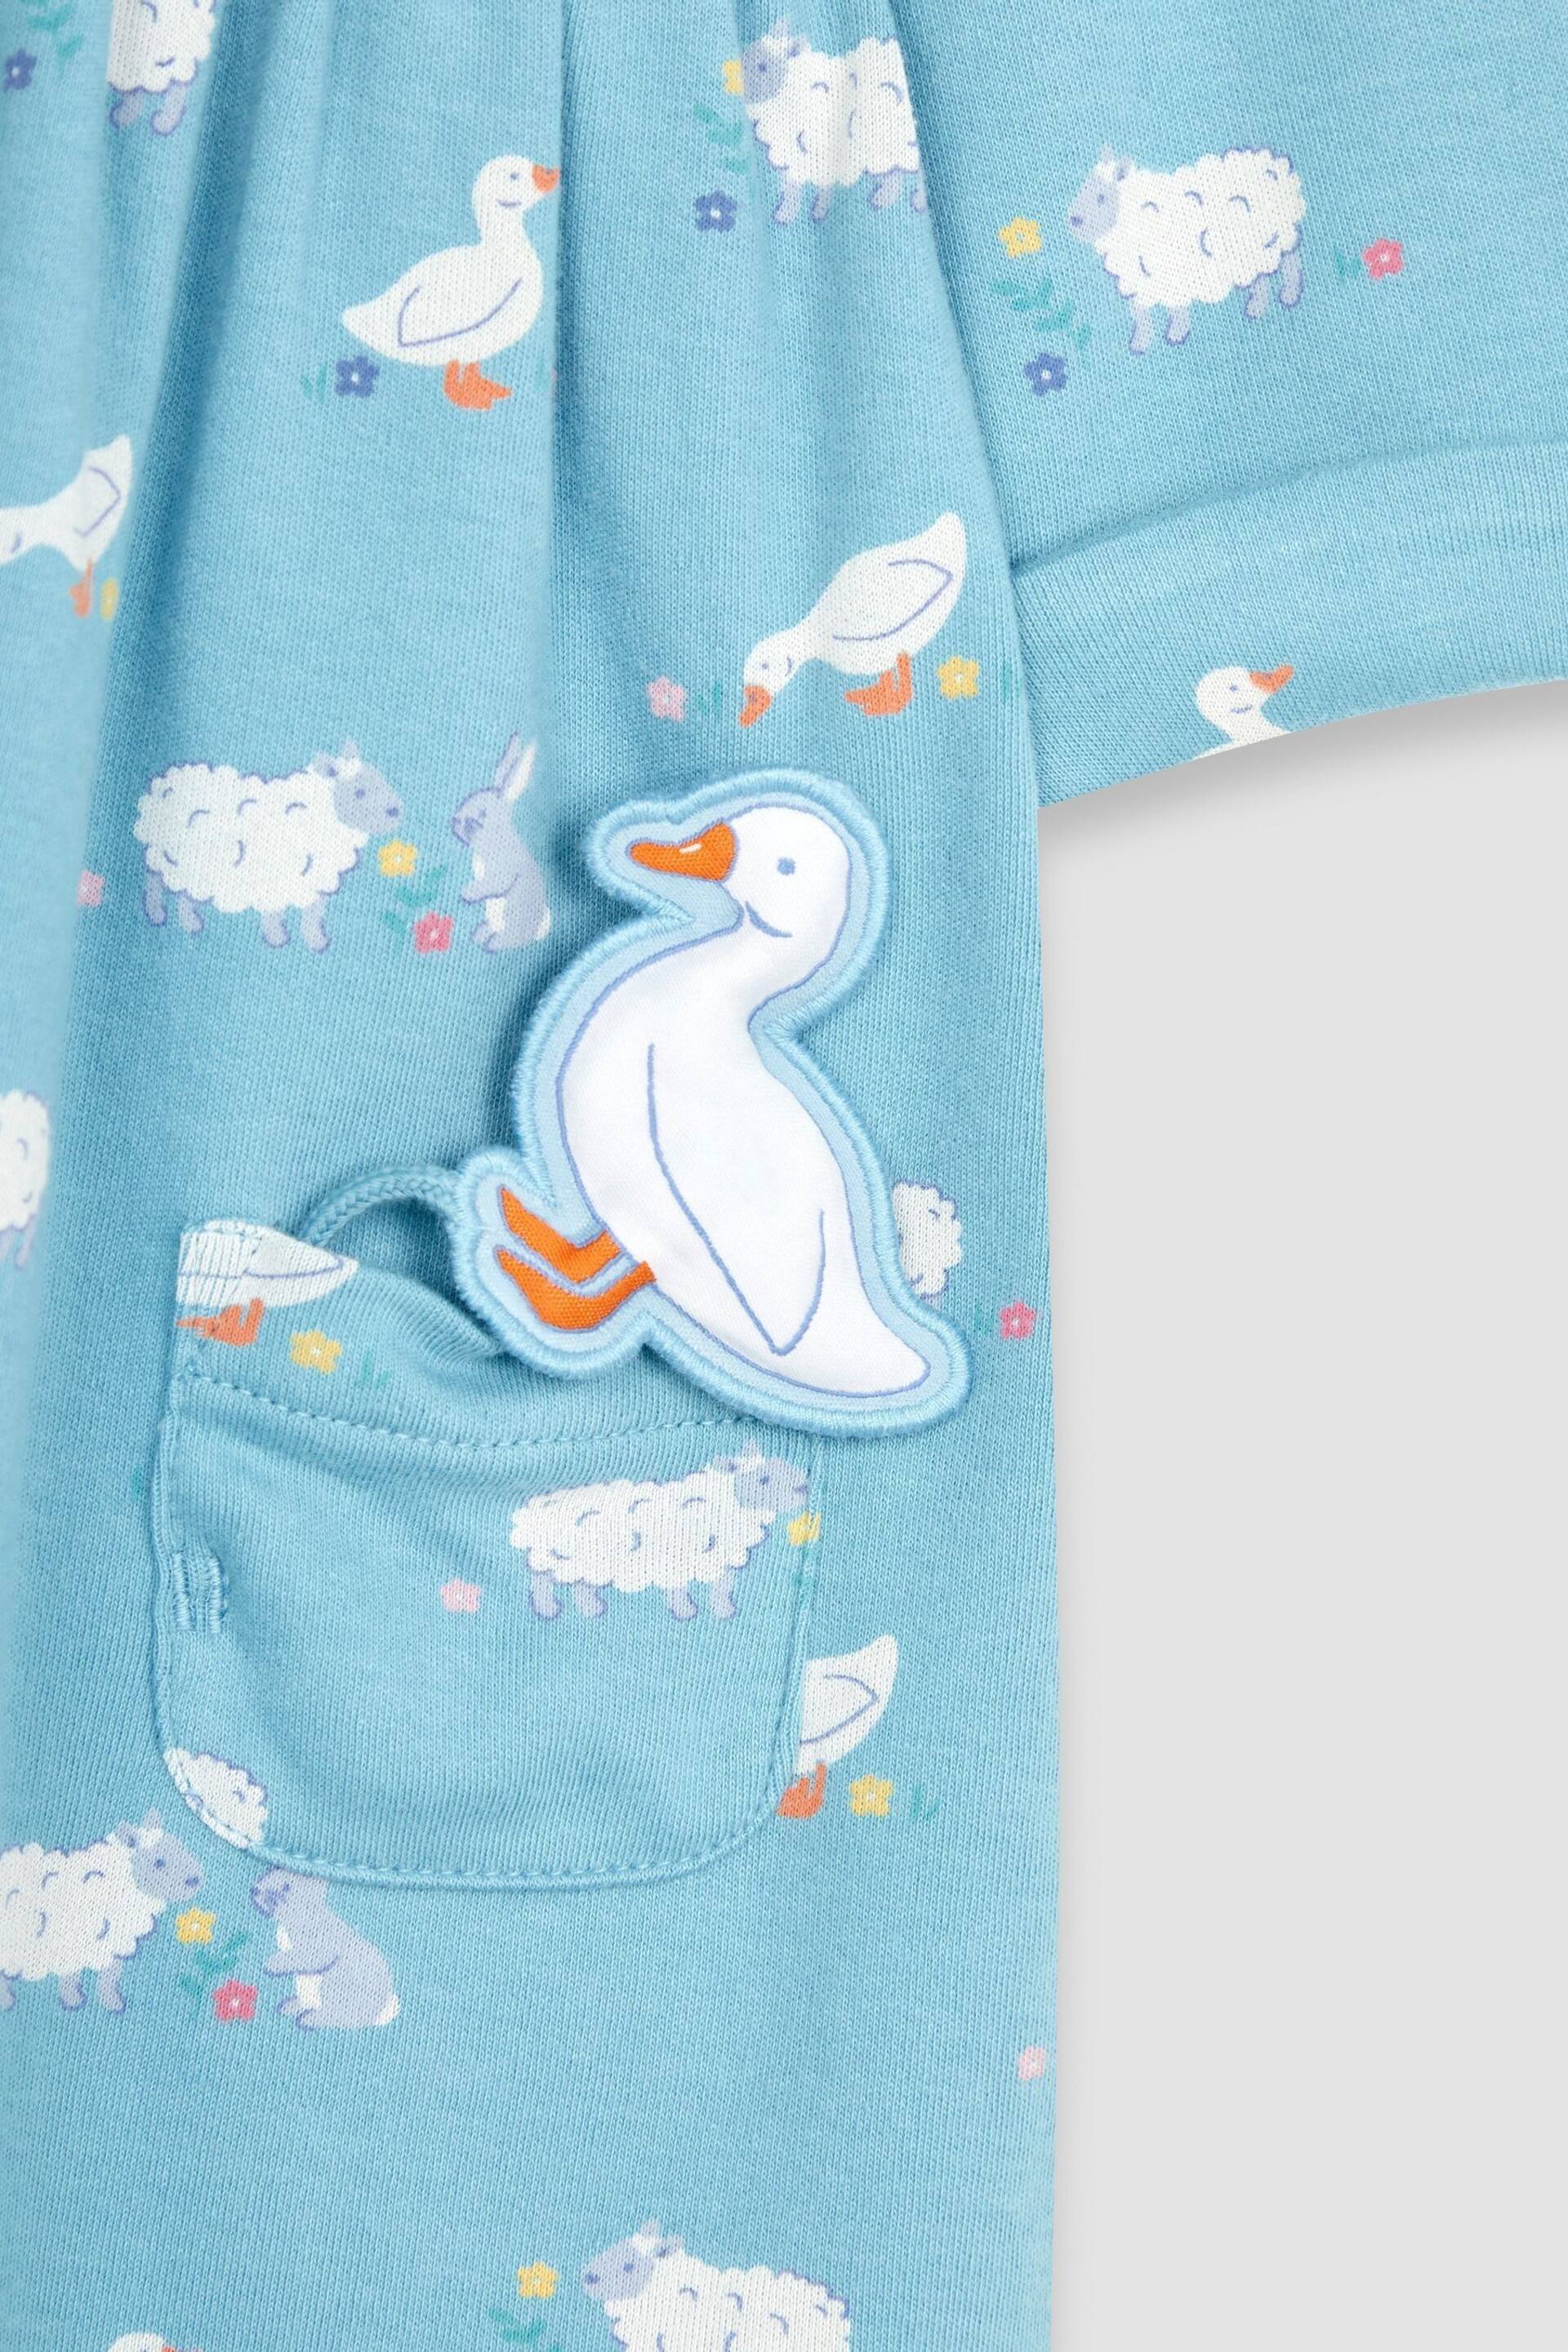 JoJo Maman Bébé Blue Duck & Friends Button Front Pet In Pocket Long Sleeve Jersey Dress - Image 3 of 3